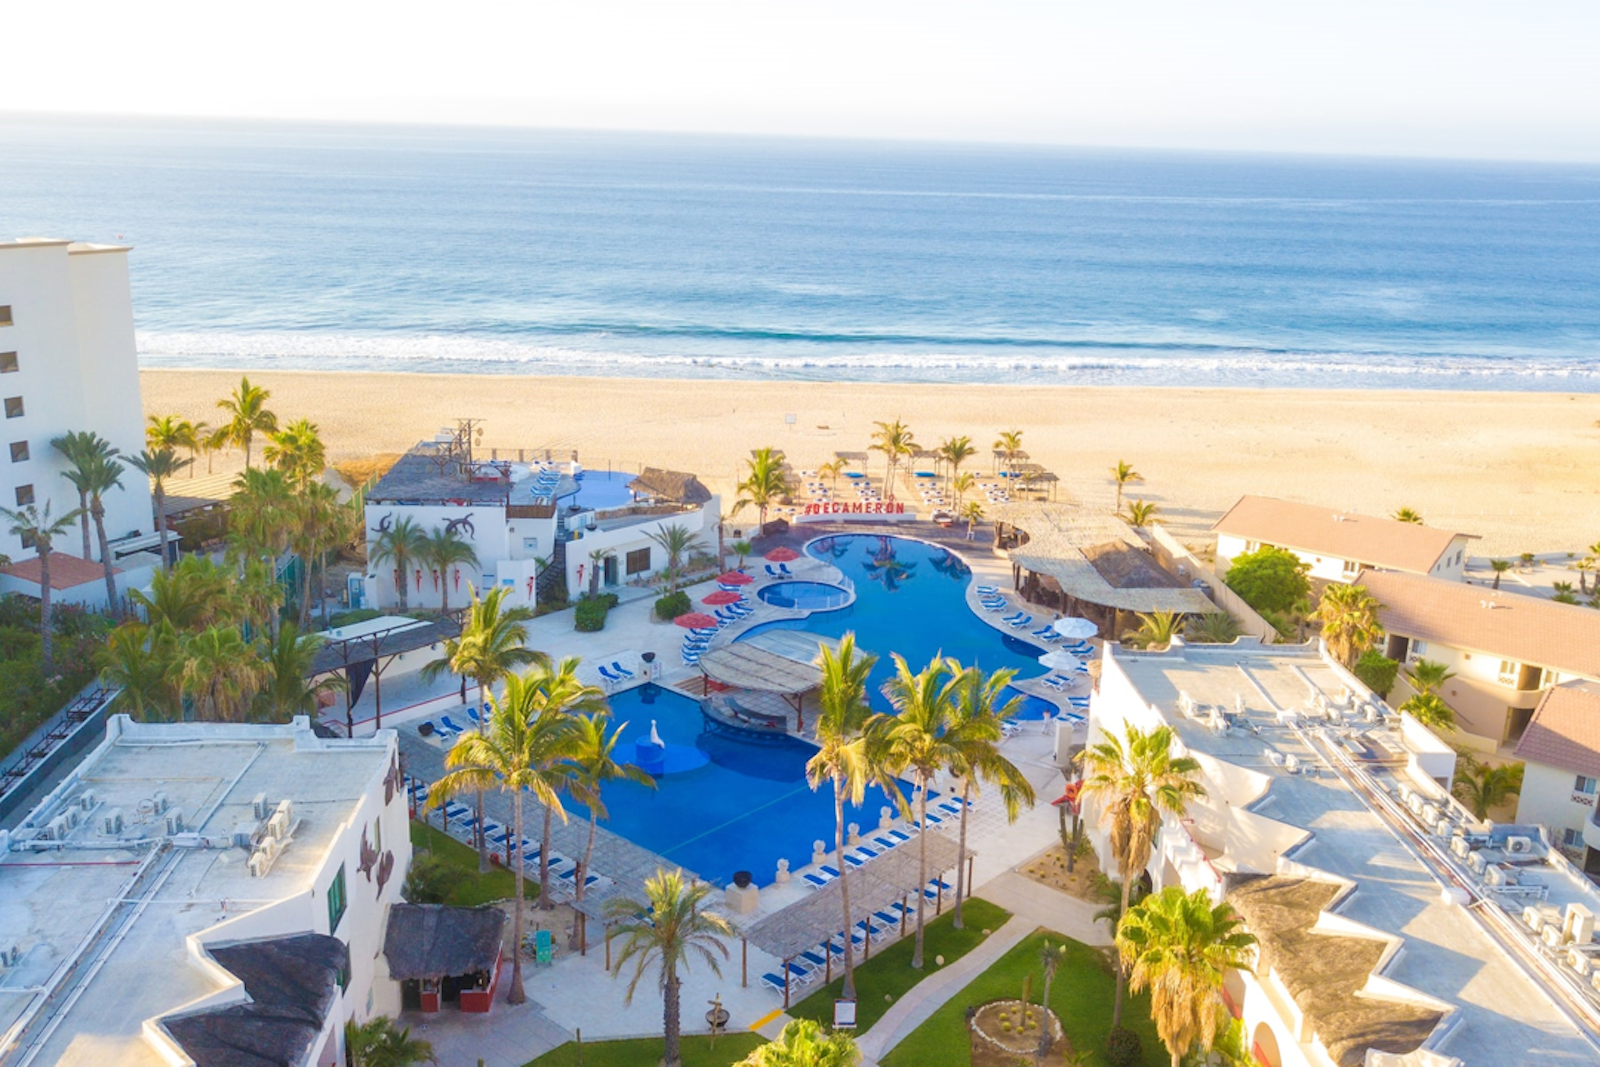 Grand Decameron Los Cabos, A Trademark All-Inclusive Resort.